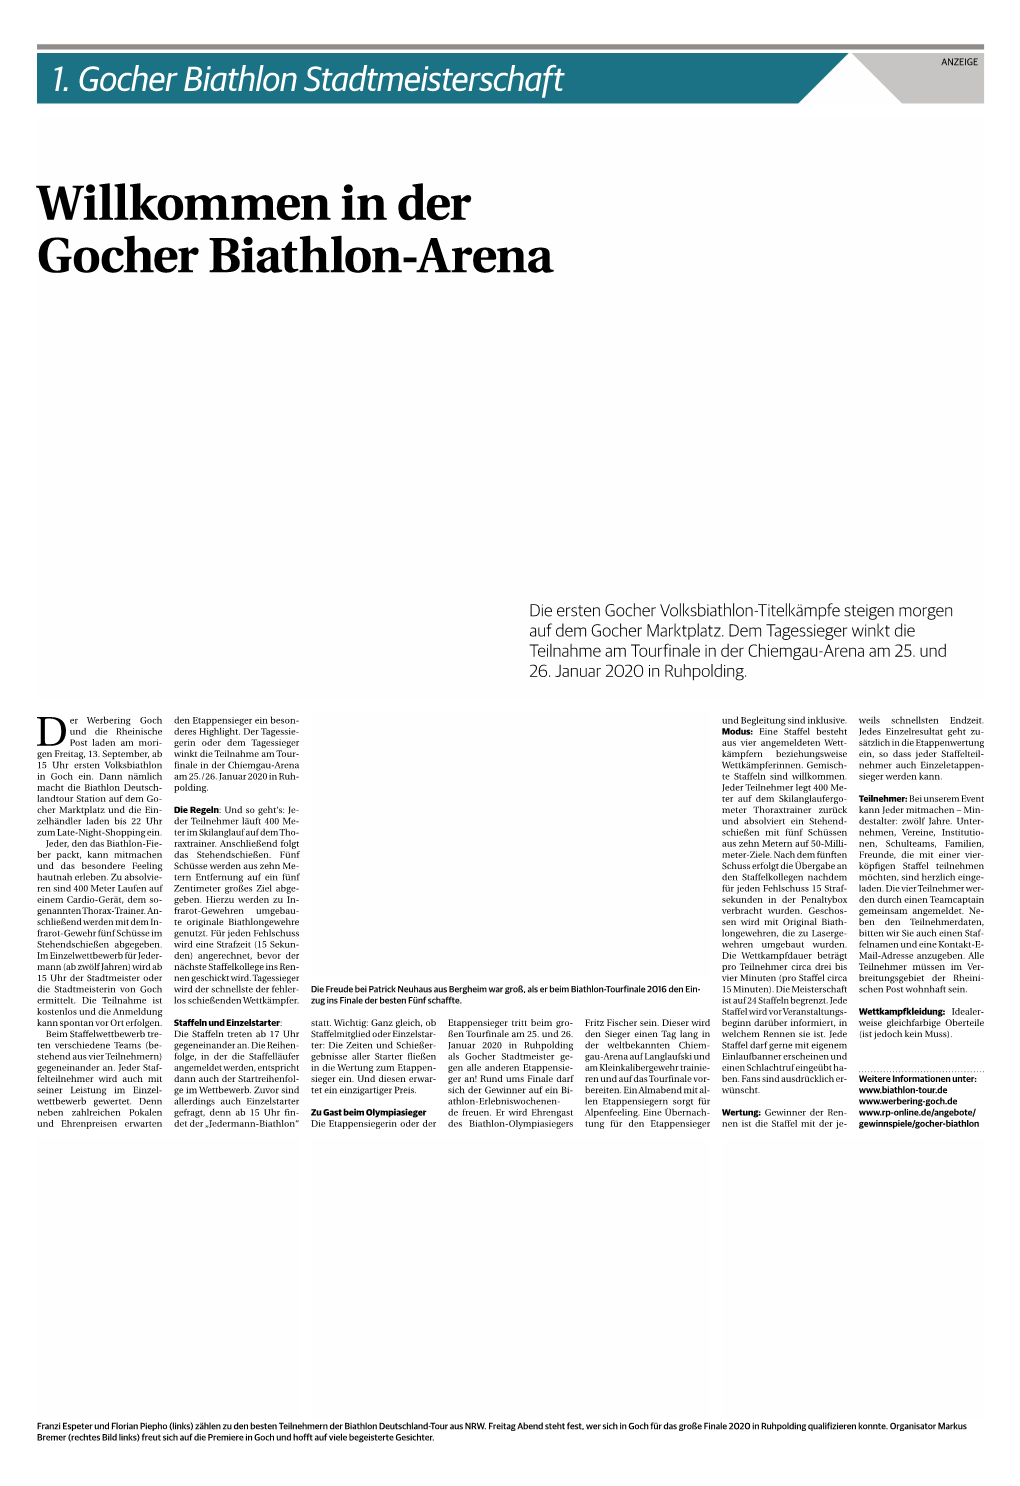 In Der Gocher Biathlon-Arena